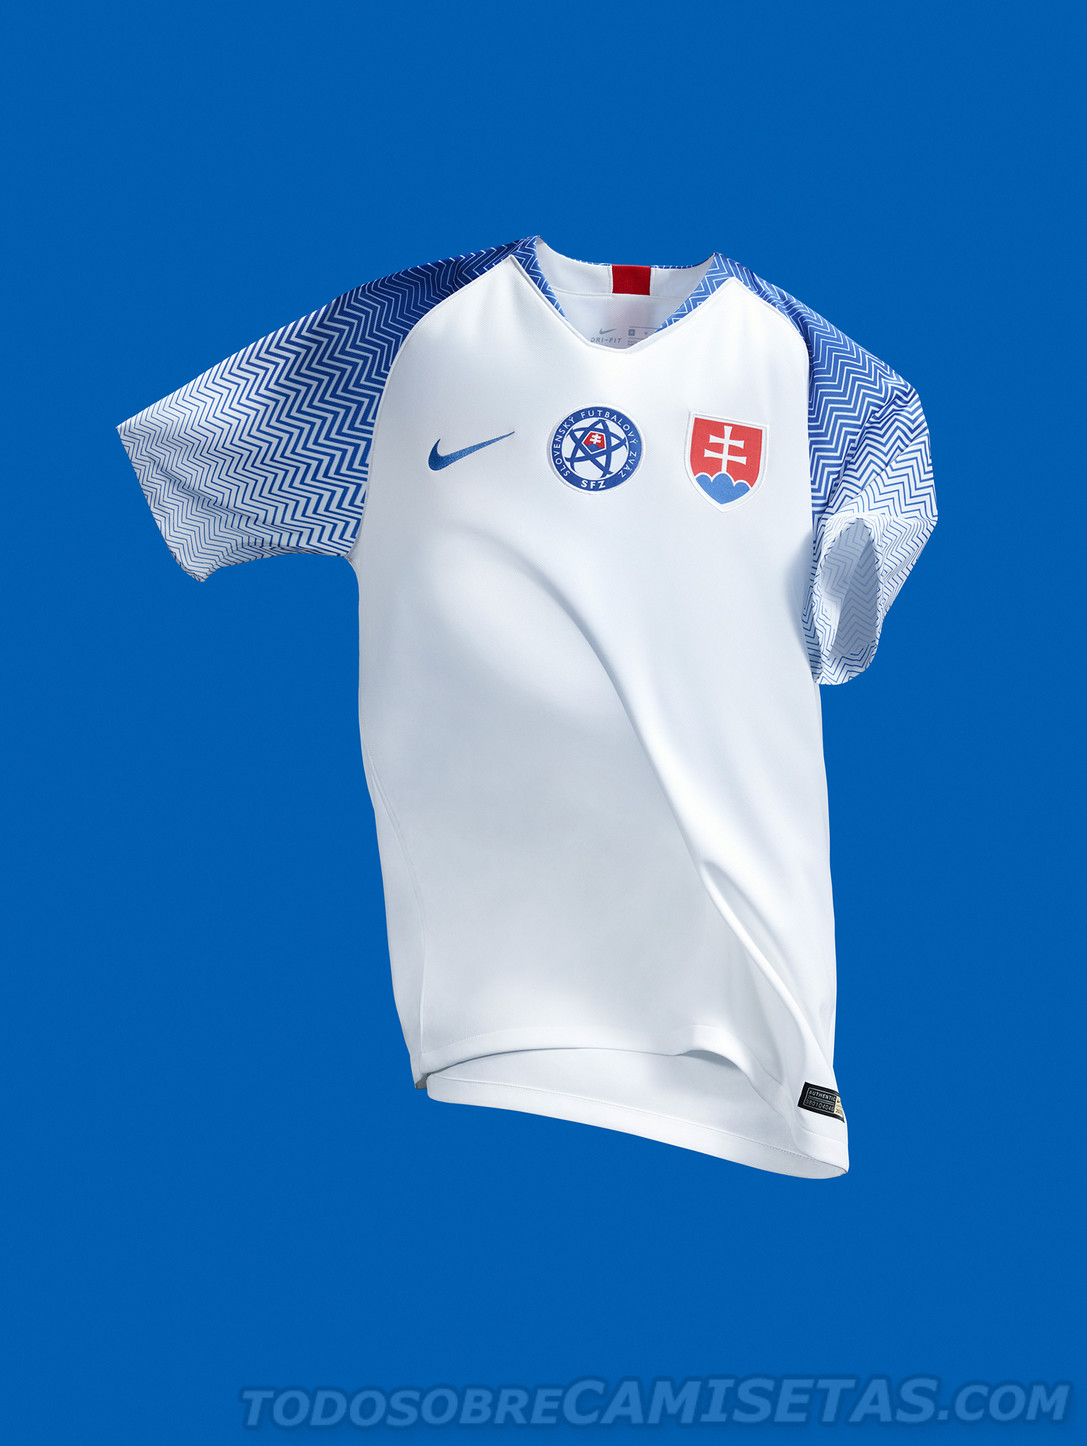 Slovakia Nike Home Kit 2018